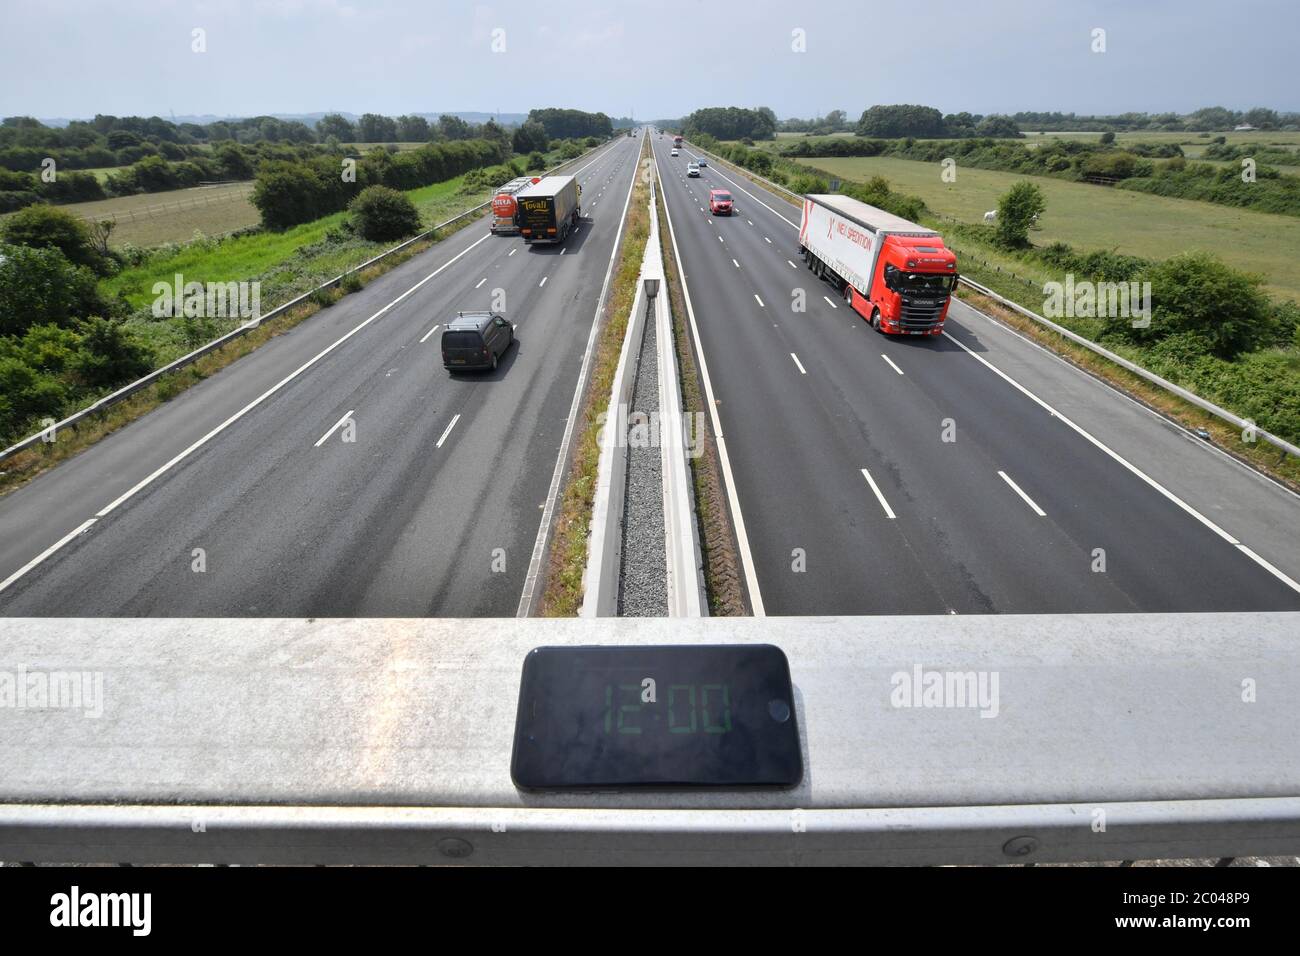 L'autoroute M5, en direction du sud depuis Highbridge, dans le Somerset, vers Devon, à midi 50 jours après qu'un photographe de l'AP ait pris une photo du même endroit en même temps que la nation était en pleine fermeture du coronavirus. Banque D'Images